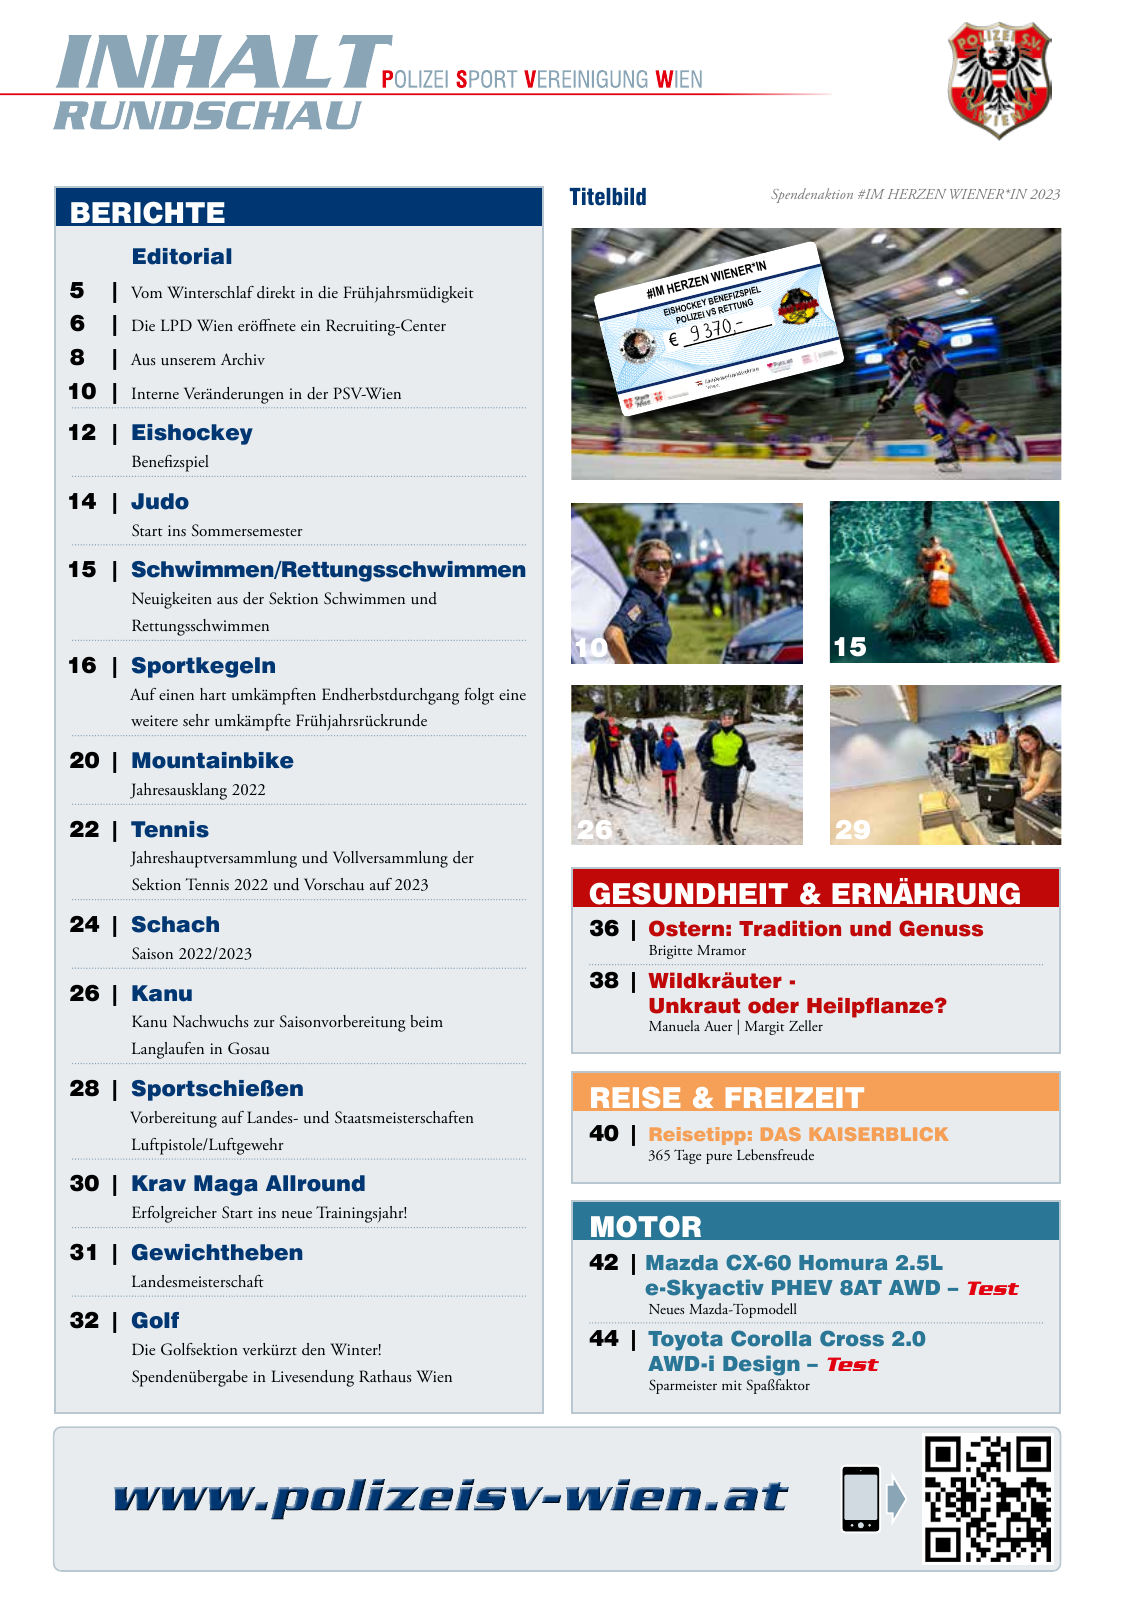 Vorschau Rundschau Polizei Sport 01-03/2023 Seite 3